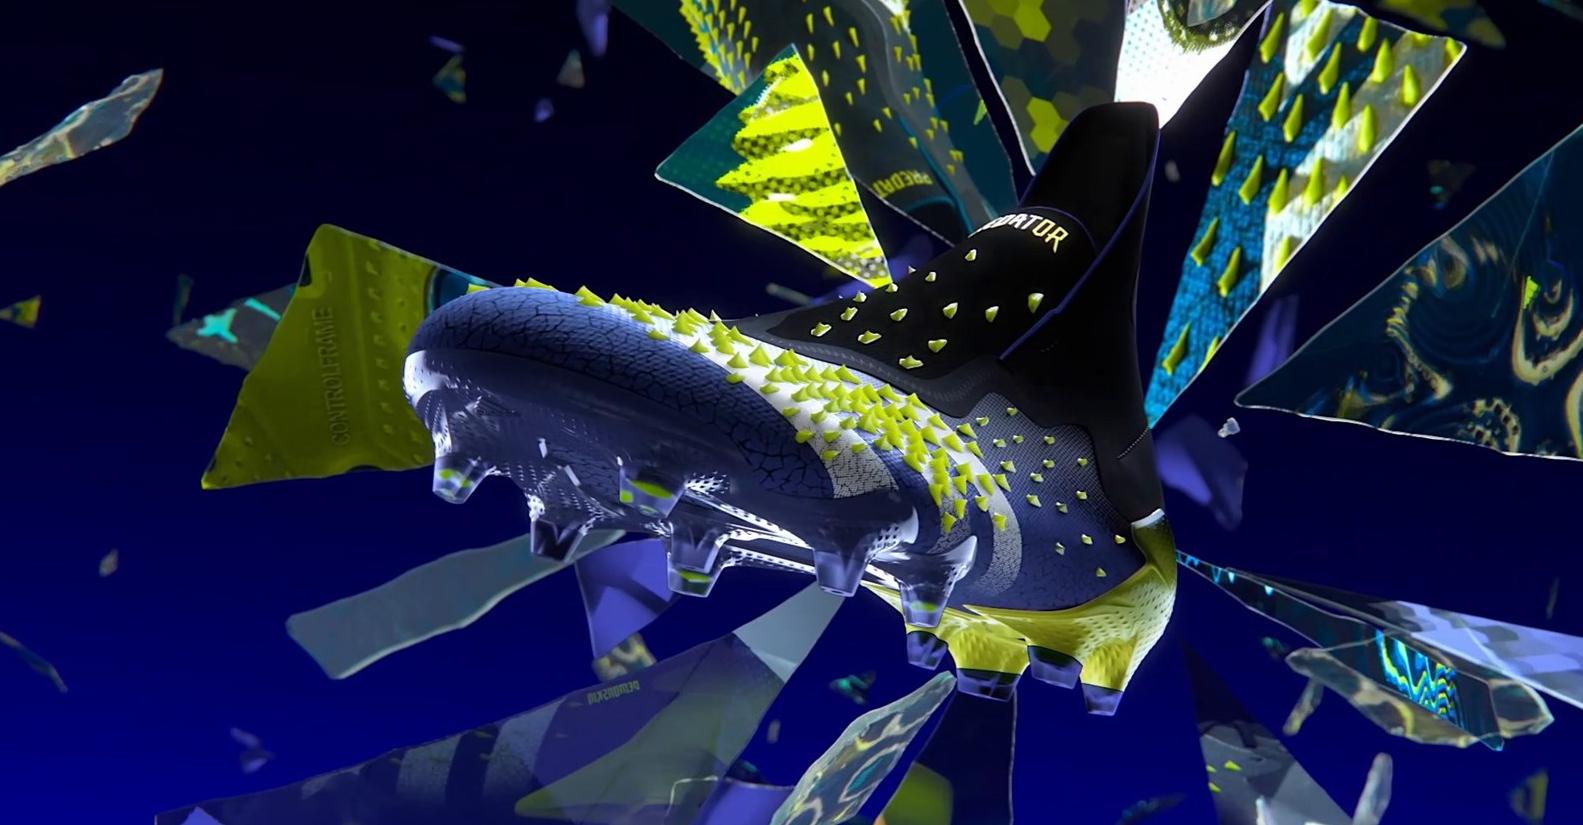 Giày đá bóng adidas Predator Freak - 